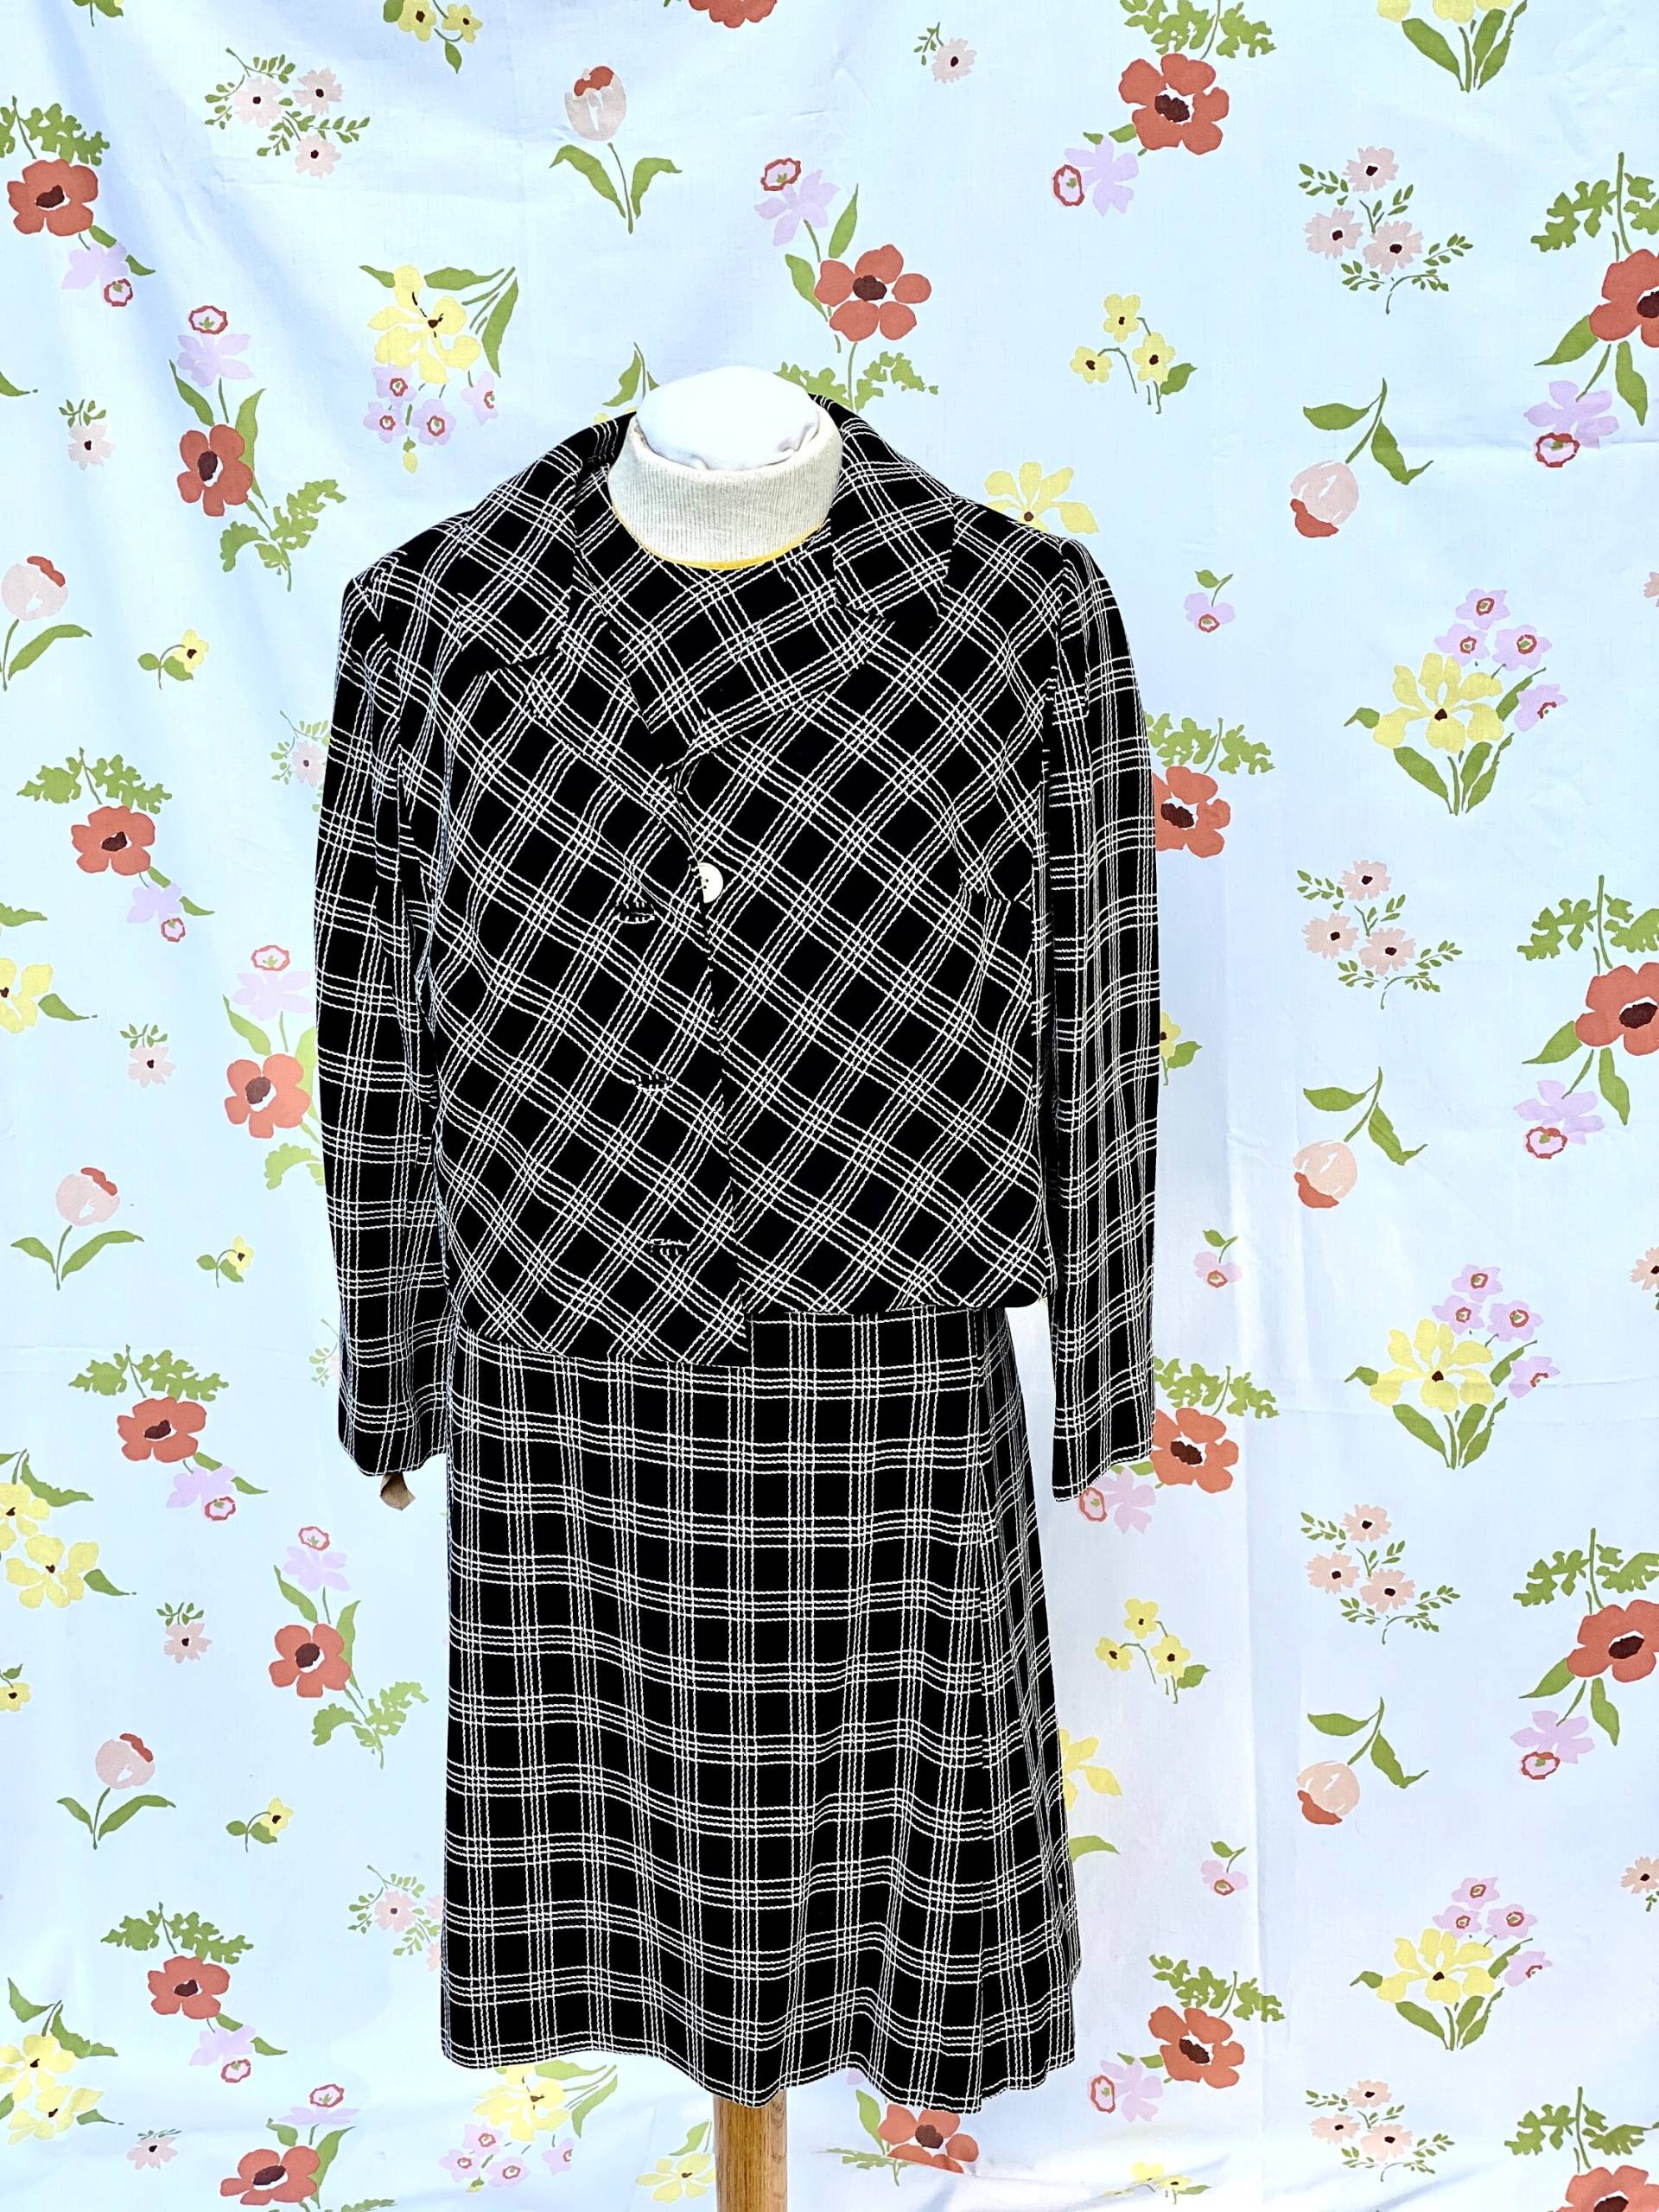 Damen Groovy Vintage Anzug/Schwarz Und Weiß/Kleid Jacke/Custom Casuals von ModNodBoutique